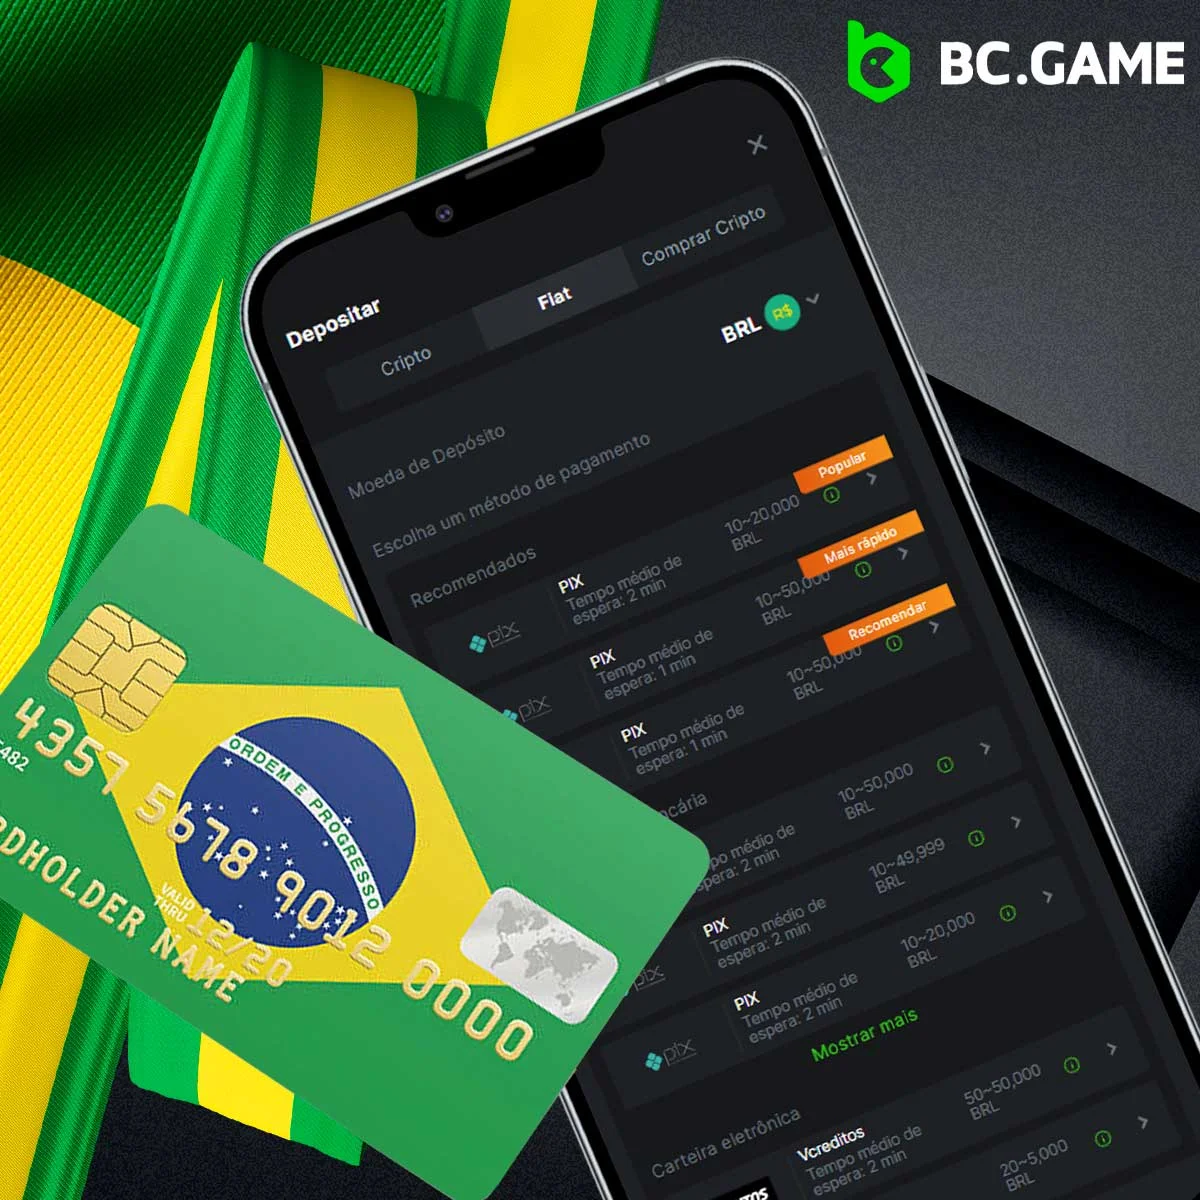 Instruções sobre como levantar dinheiro através da aplicação móvel BC Game